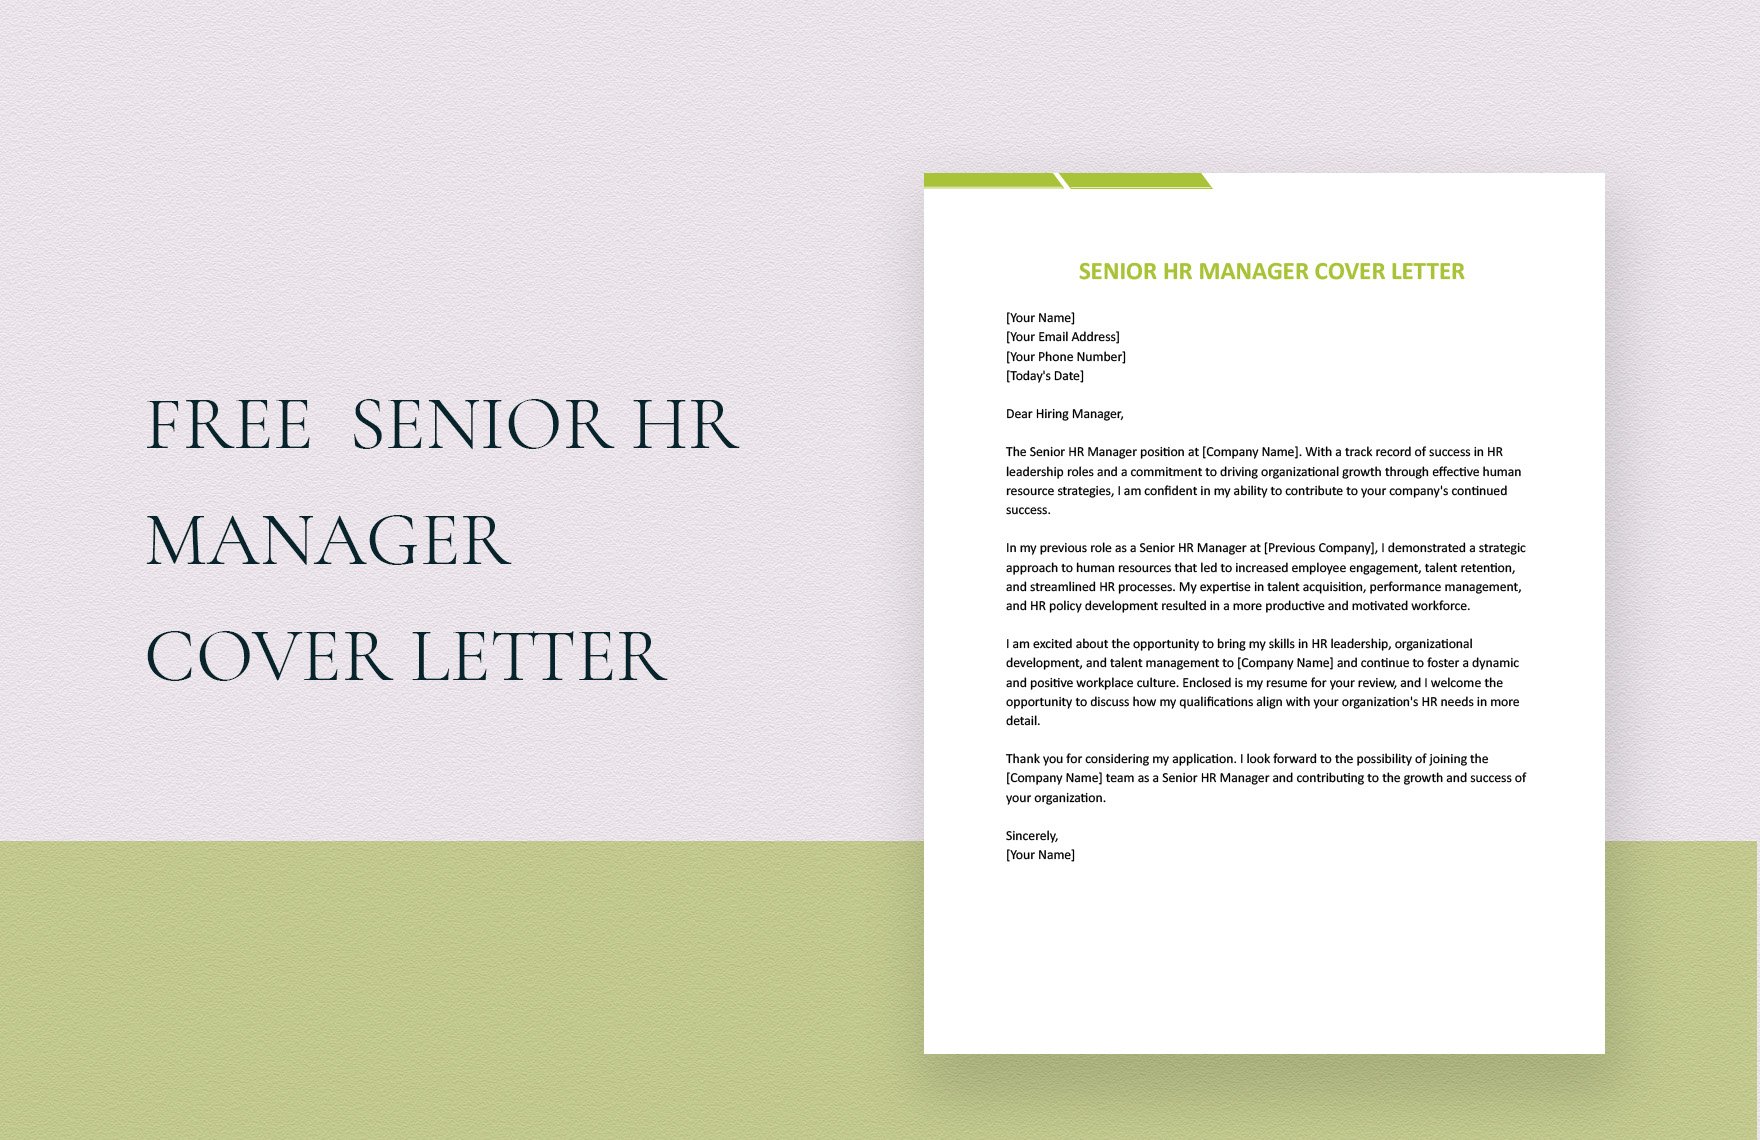 Senior HR Manager Cover Letter